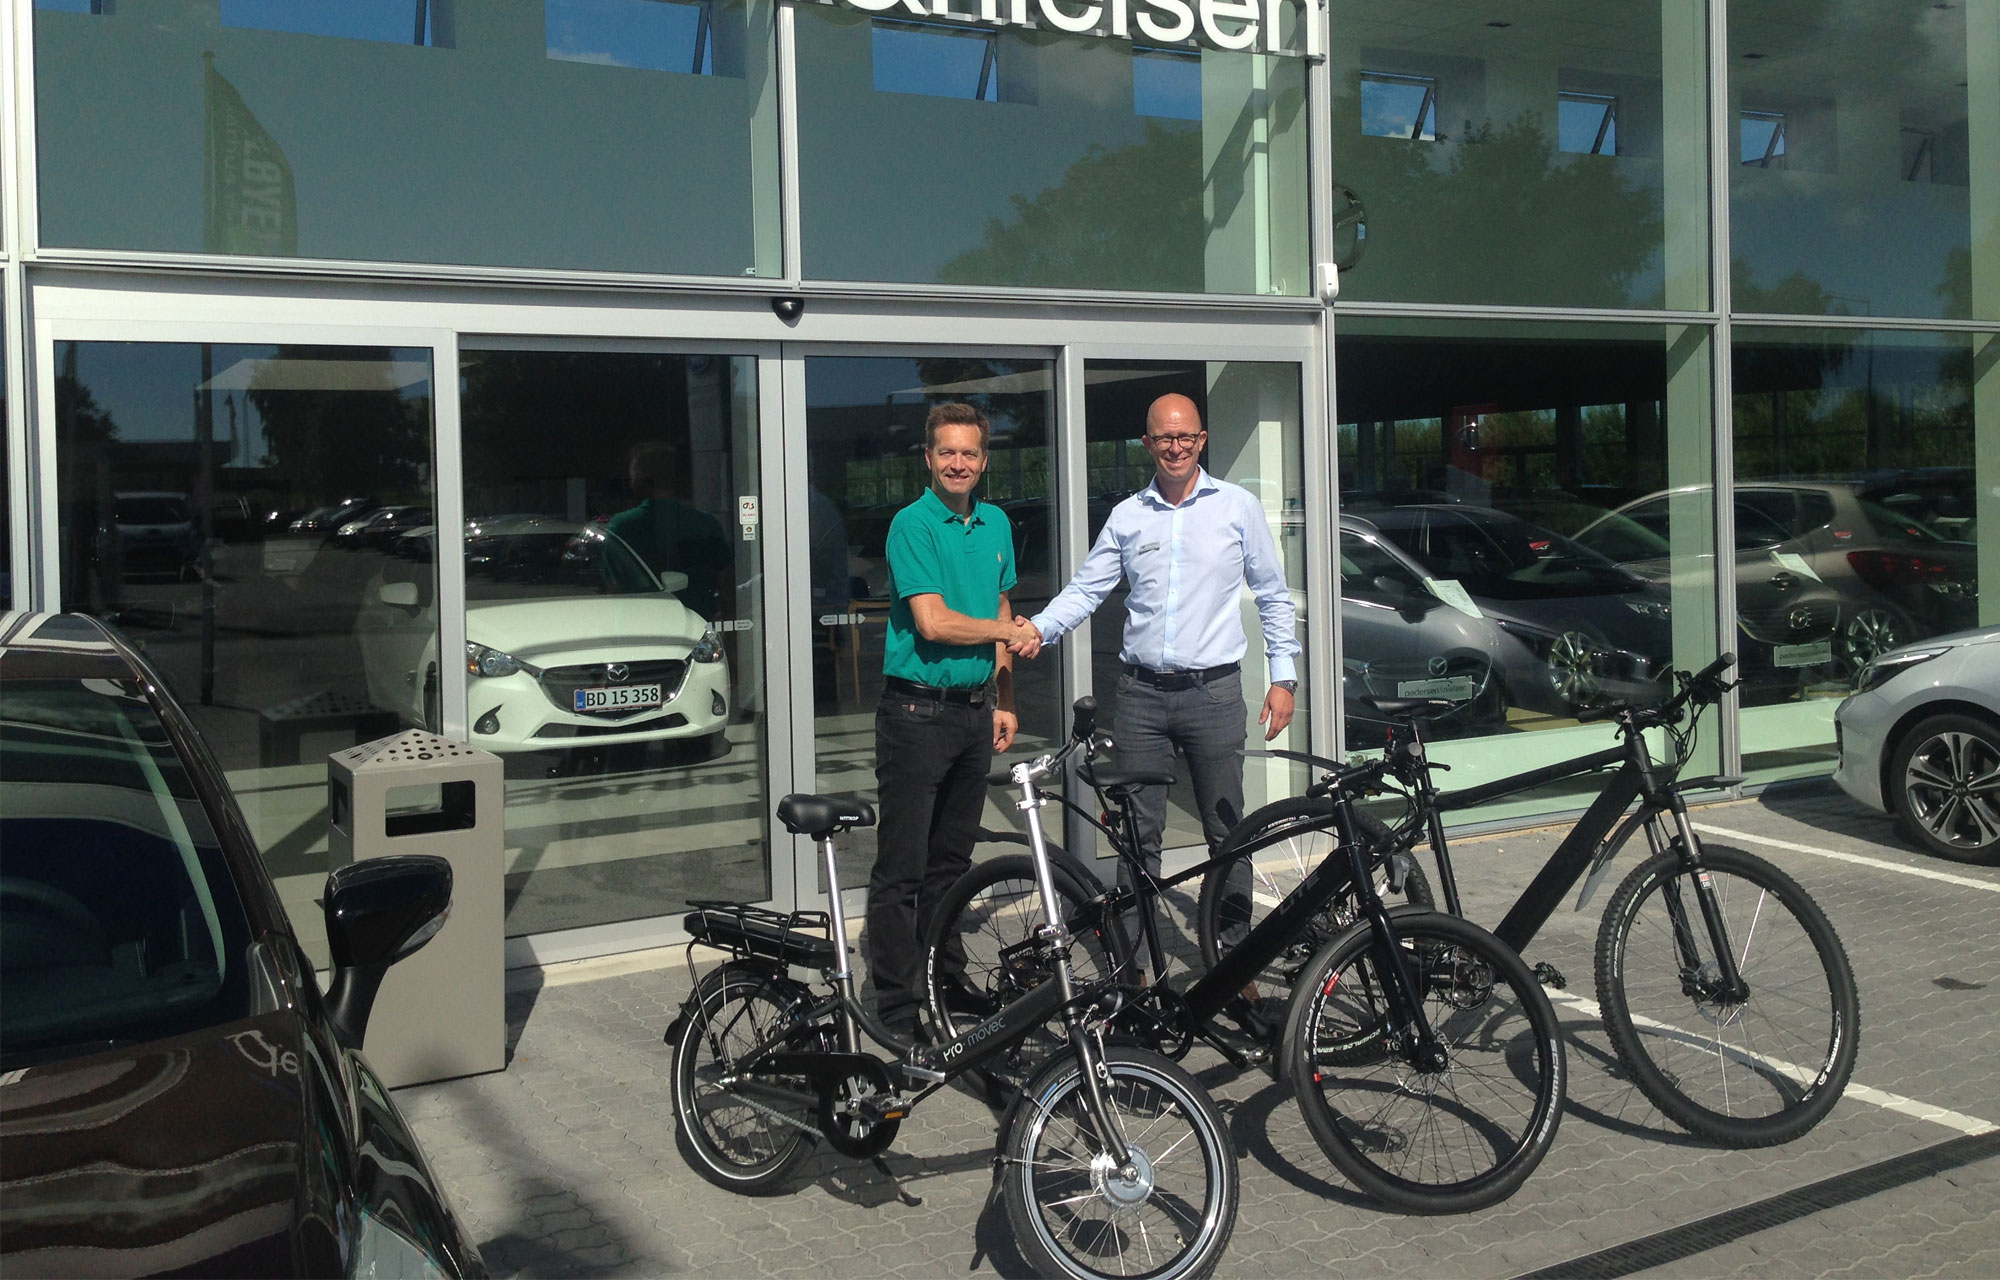 Pedersen & Nielsen Automobilforretning i Risskov udvider modelporteføljen med tohjulede køretøjer